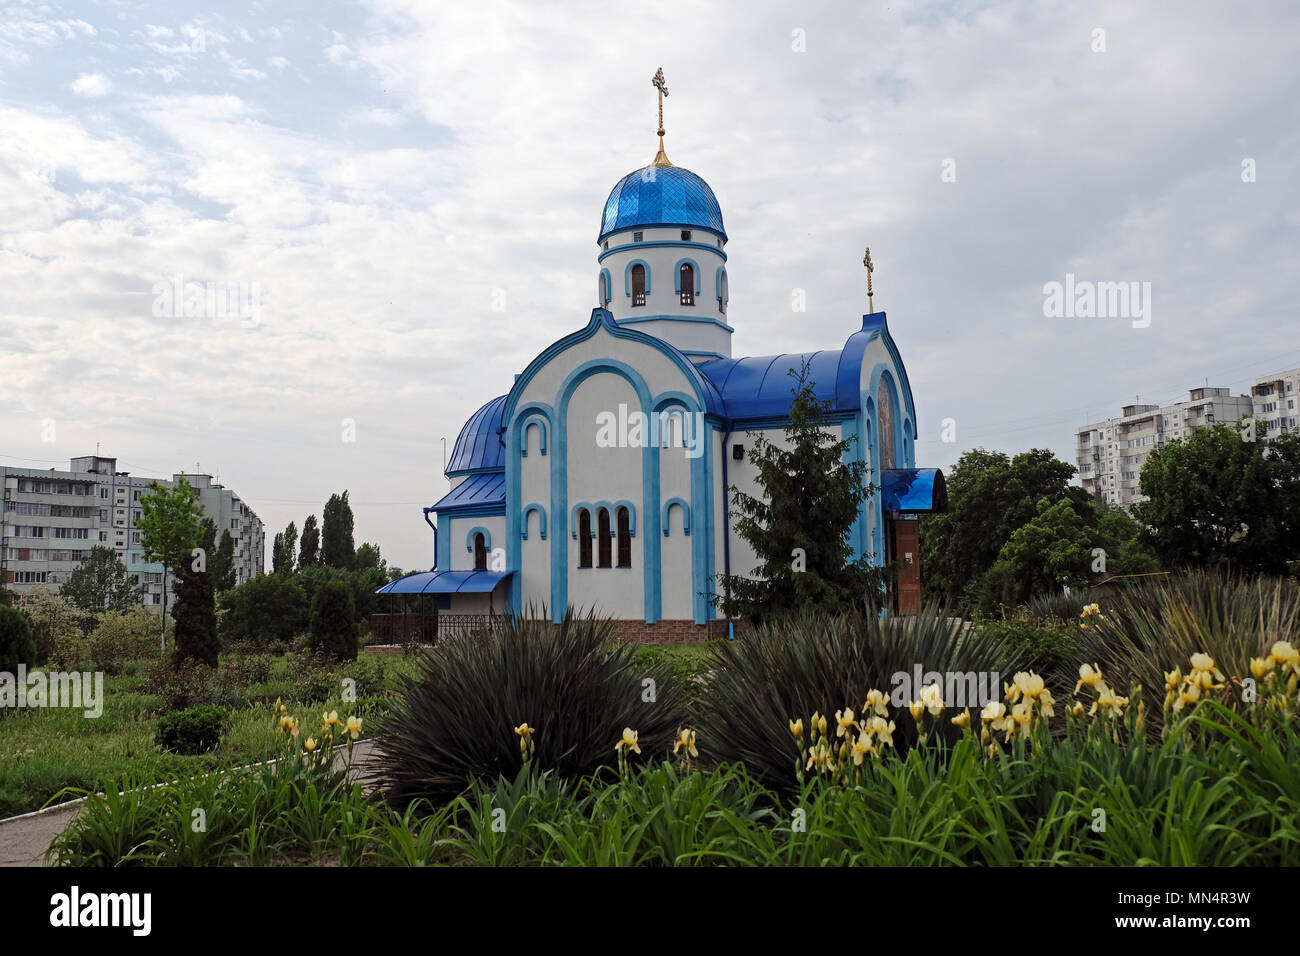 Äußere der Russisch-orthodoxen Kirche der Heiligen Joachim und Anna in der Stadt Bender de-facto-offizieller Name Bendery innerhalb der international anerkannten Grenzen der Republik Moldau unter der De-facto-Kontrolle der unerkannte Pridnestrovian Moldauischen Republik auch als Transnistrien (PMR) seit 1992. Stockfoto